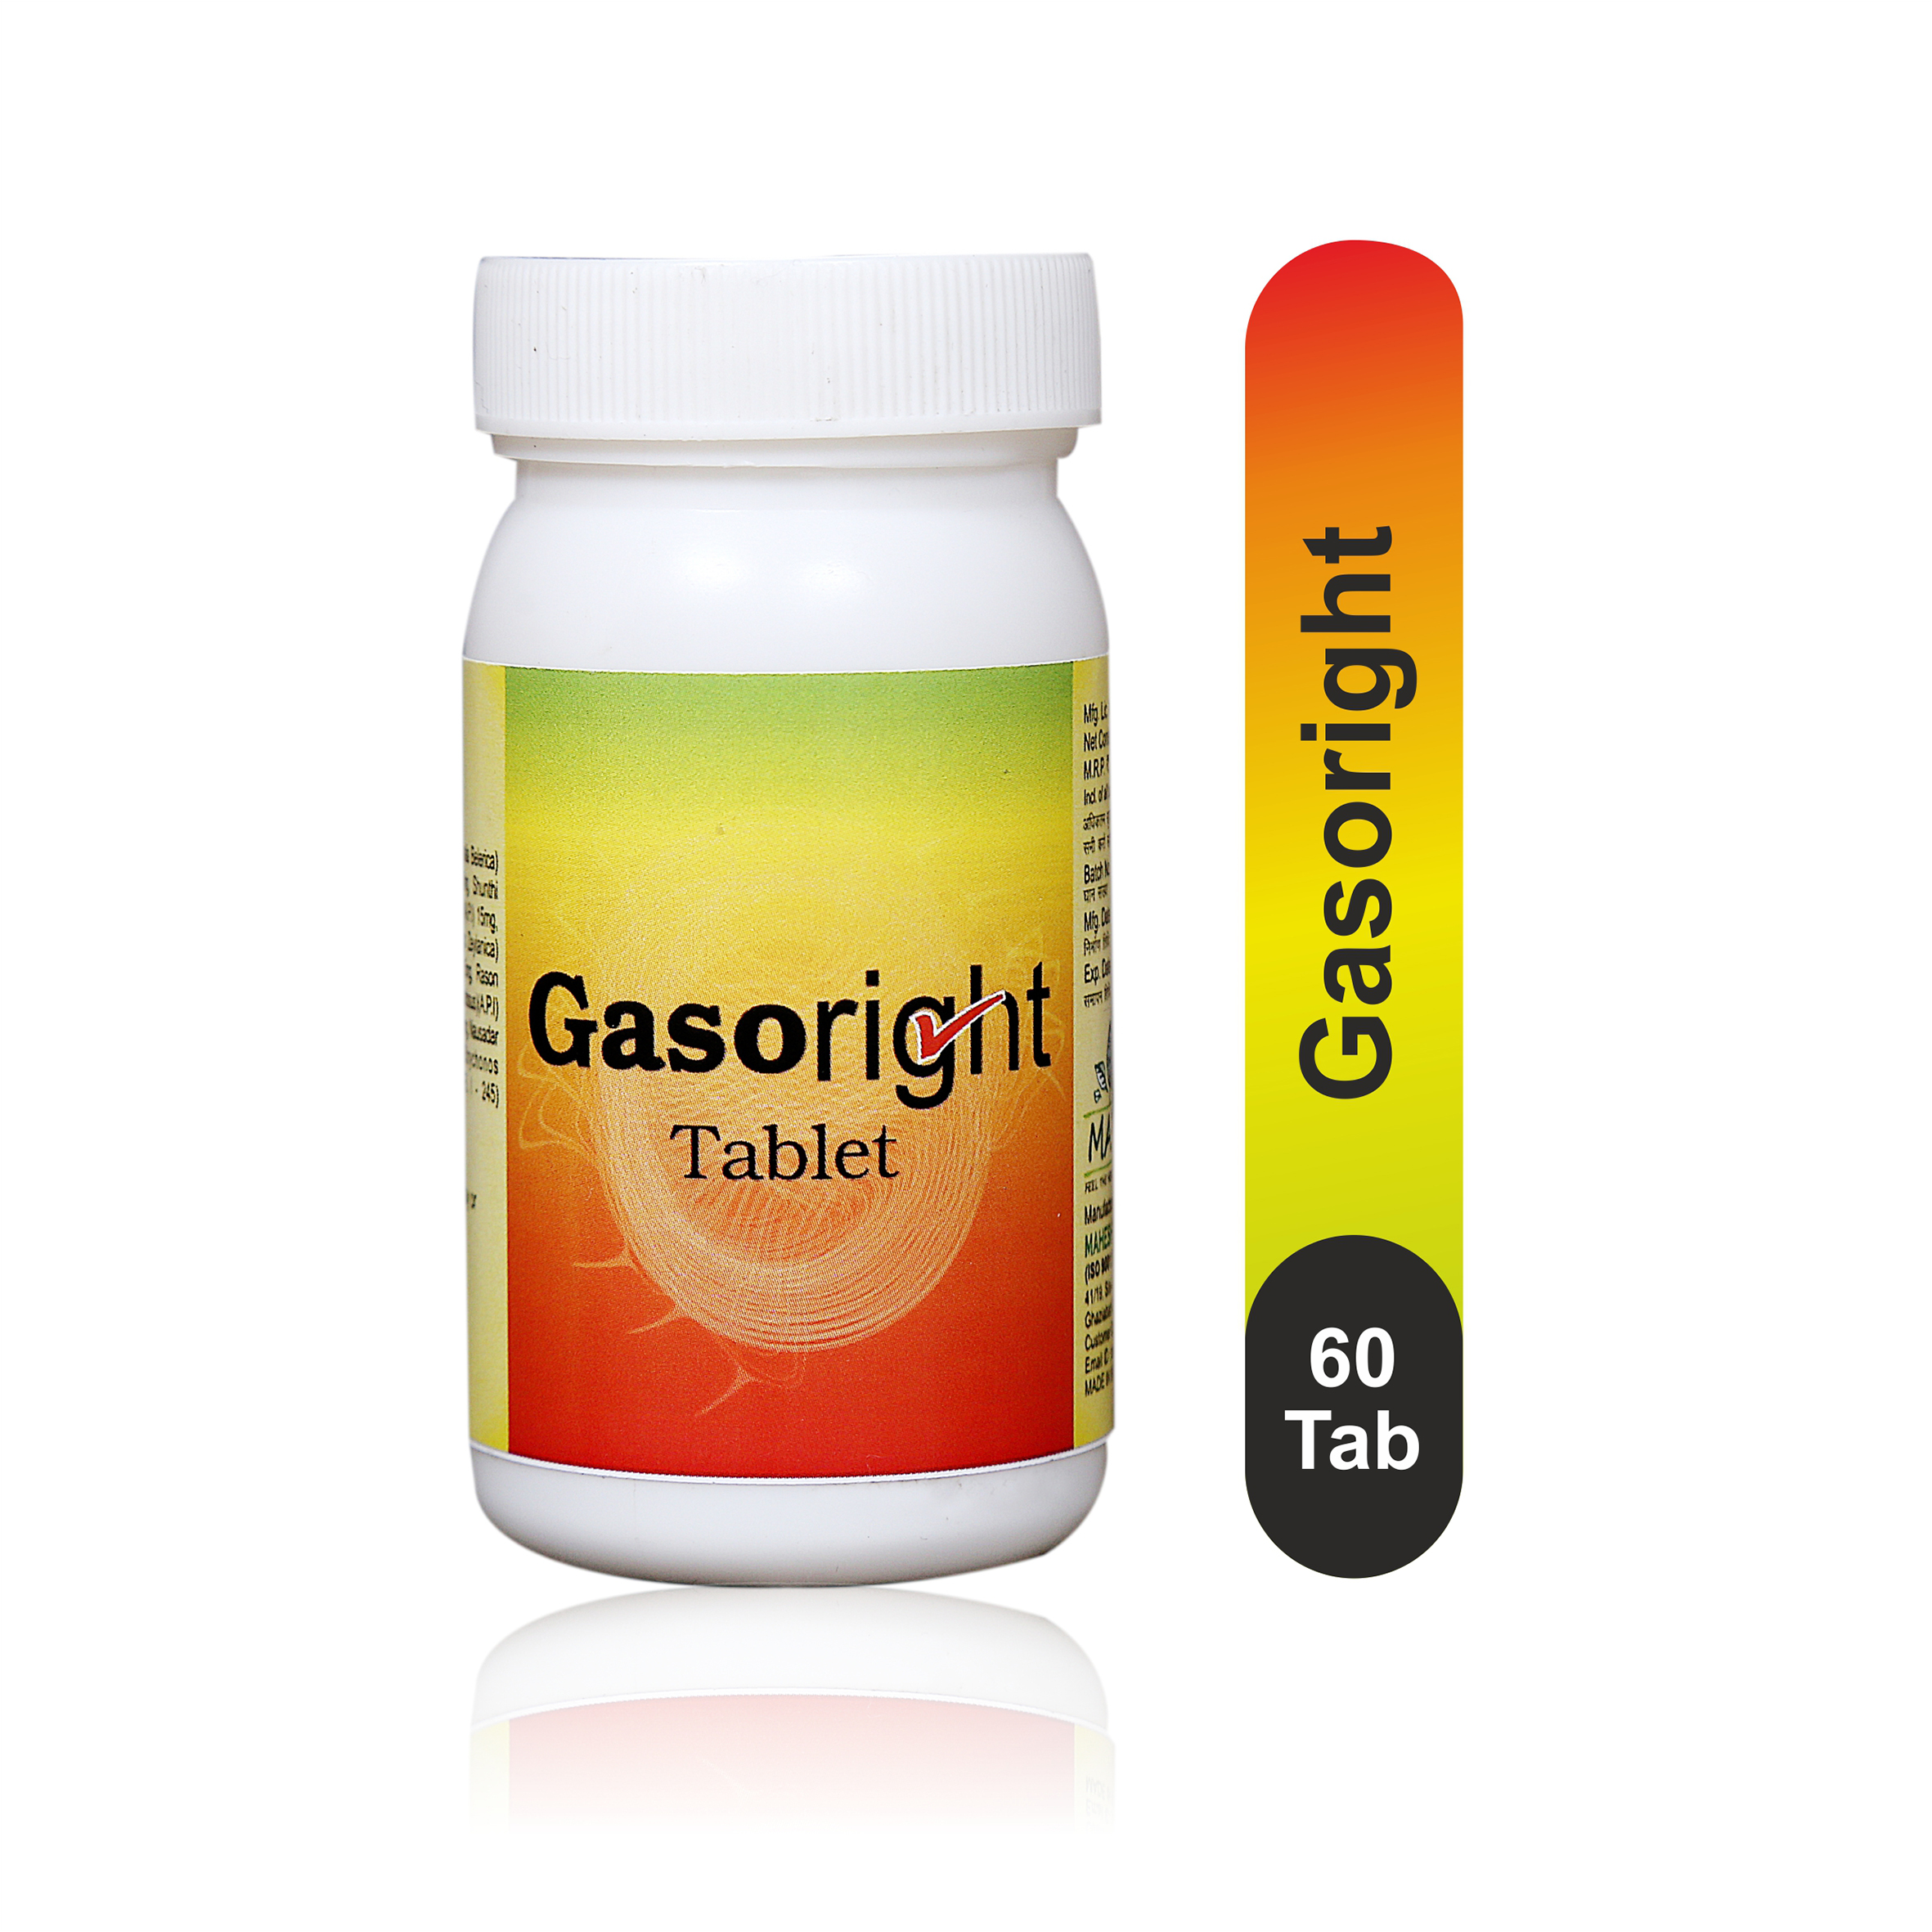 Gasoright Tablet